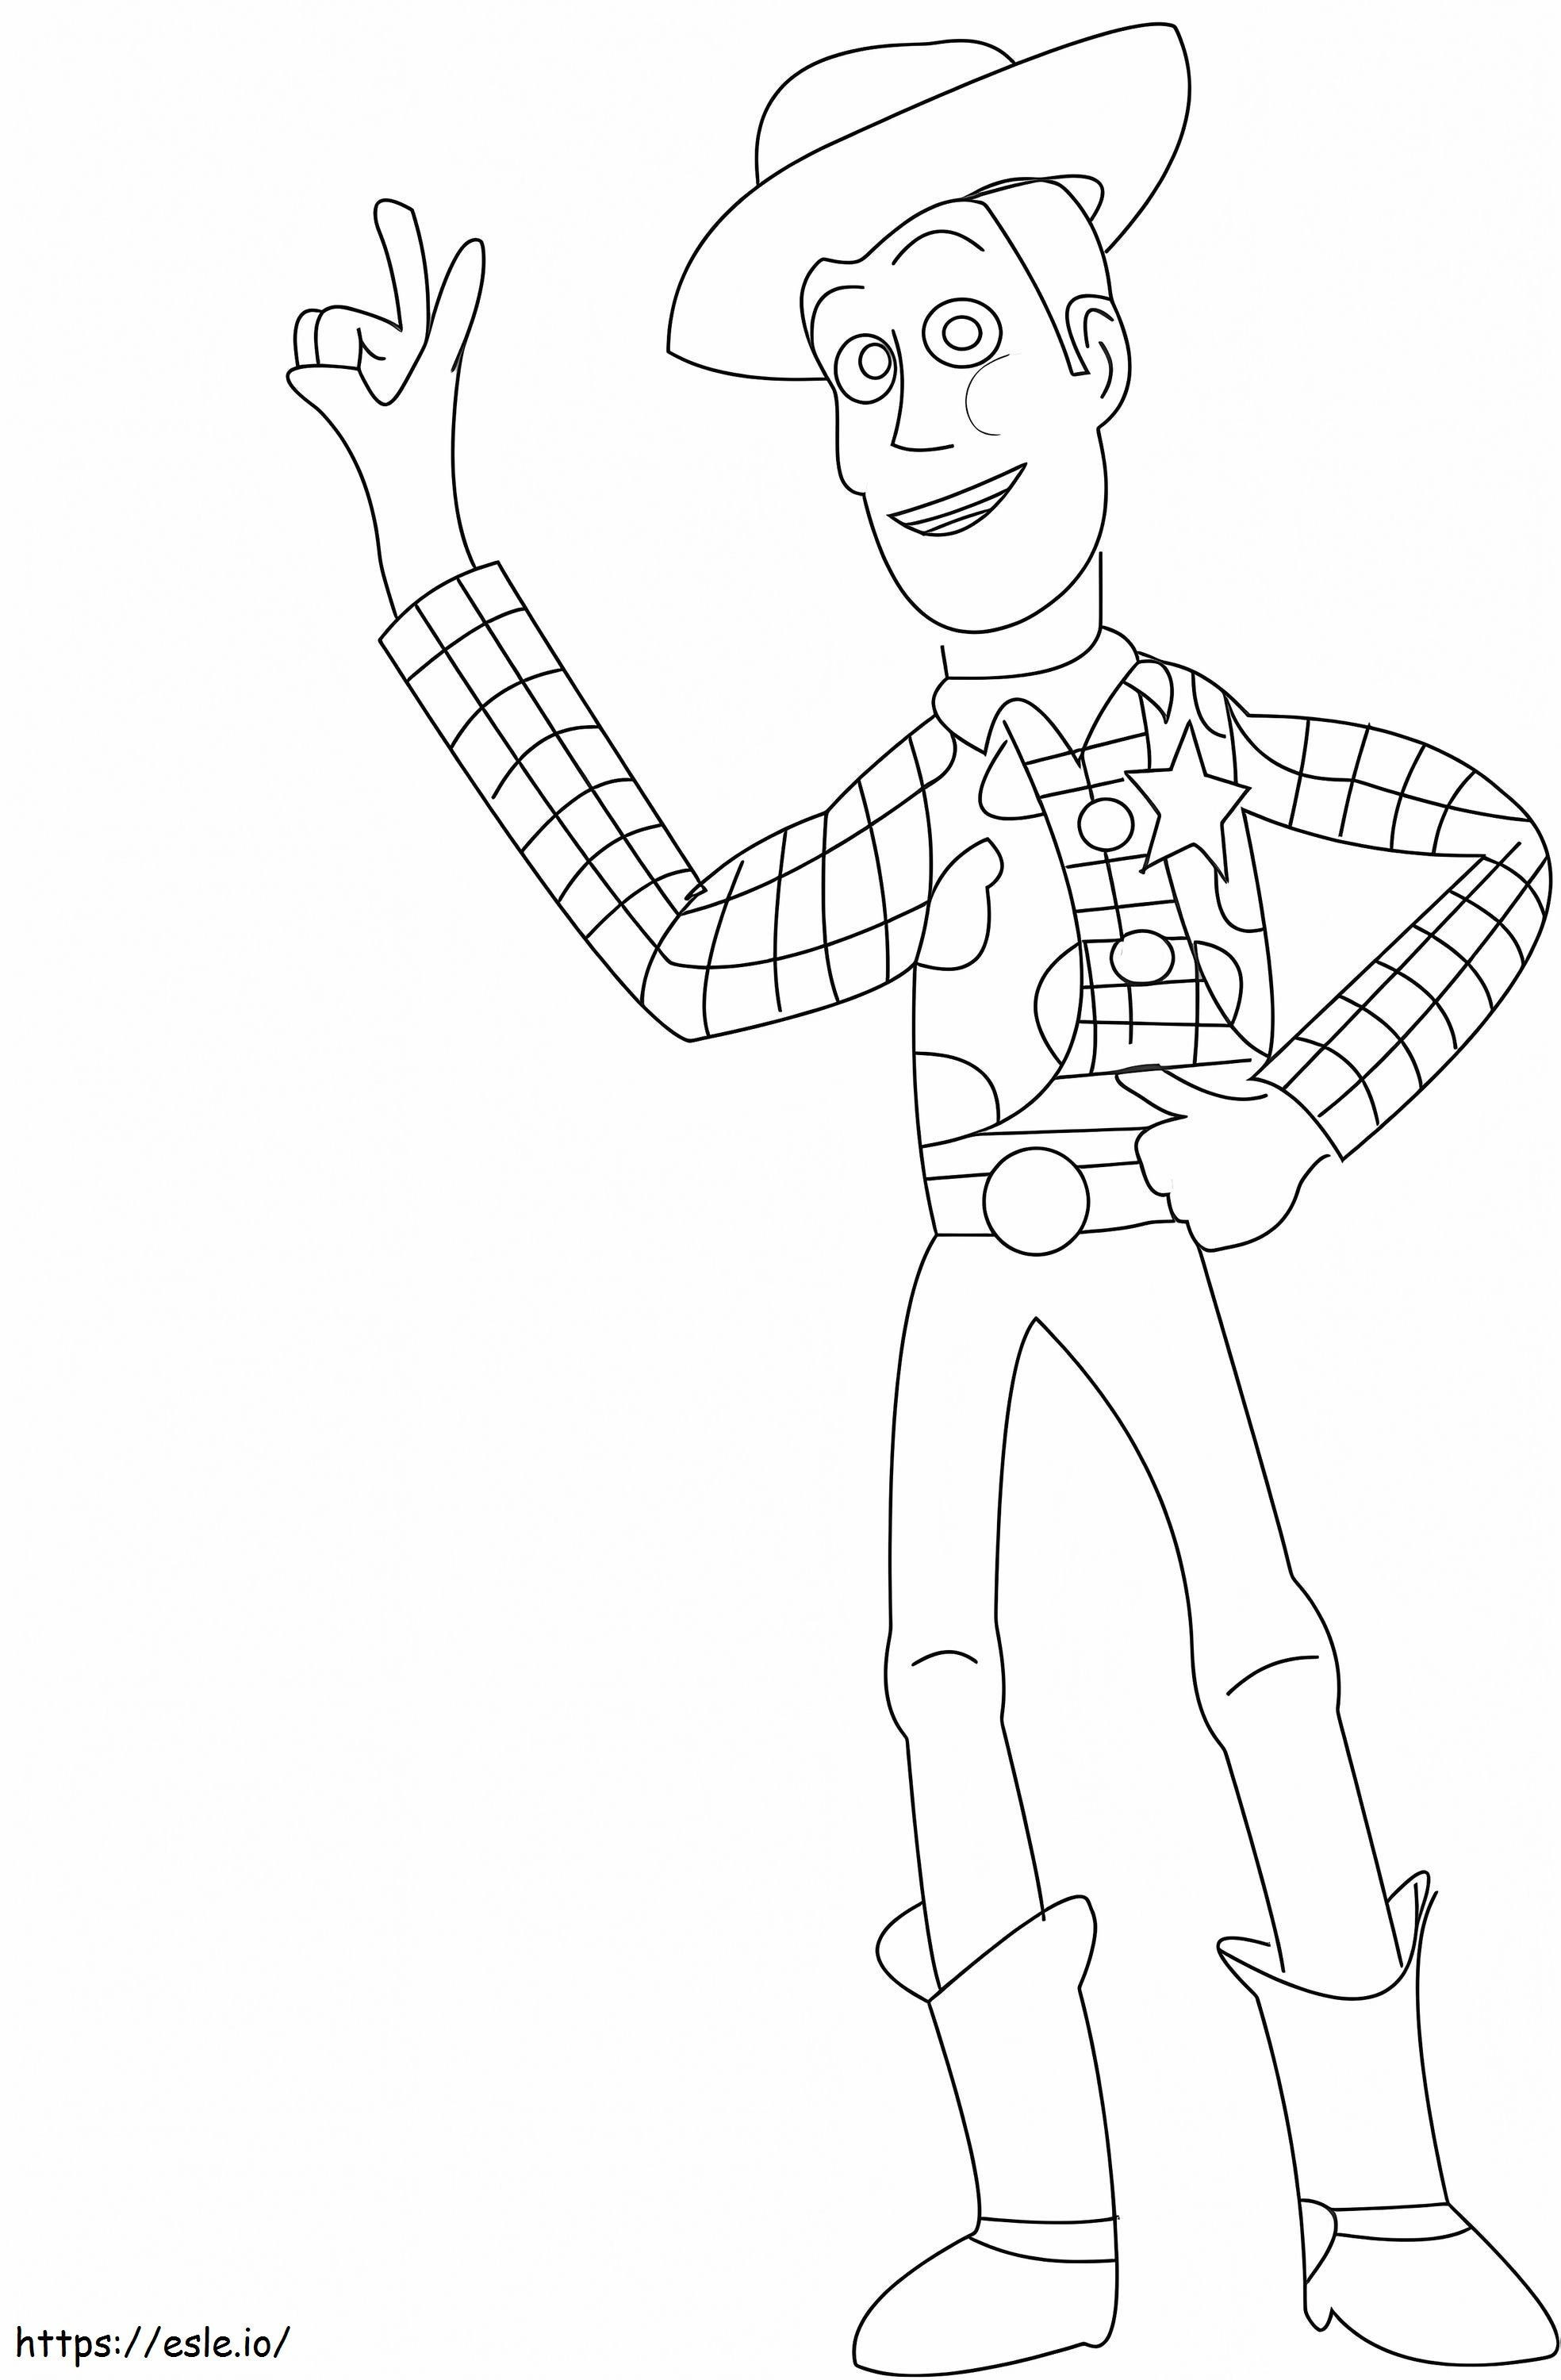 Dibujo De Woody para colorear